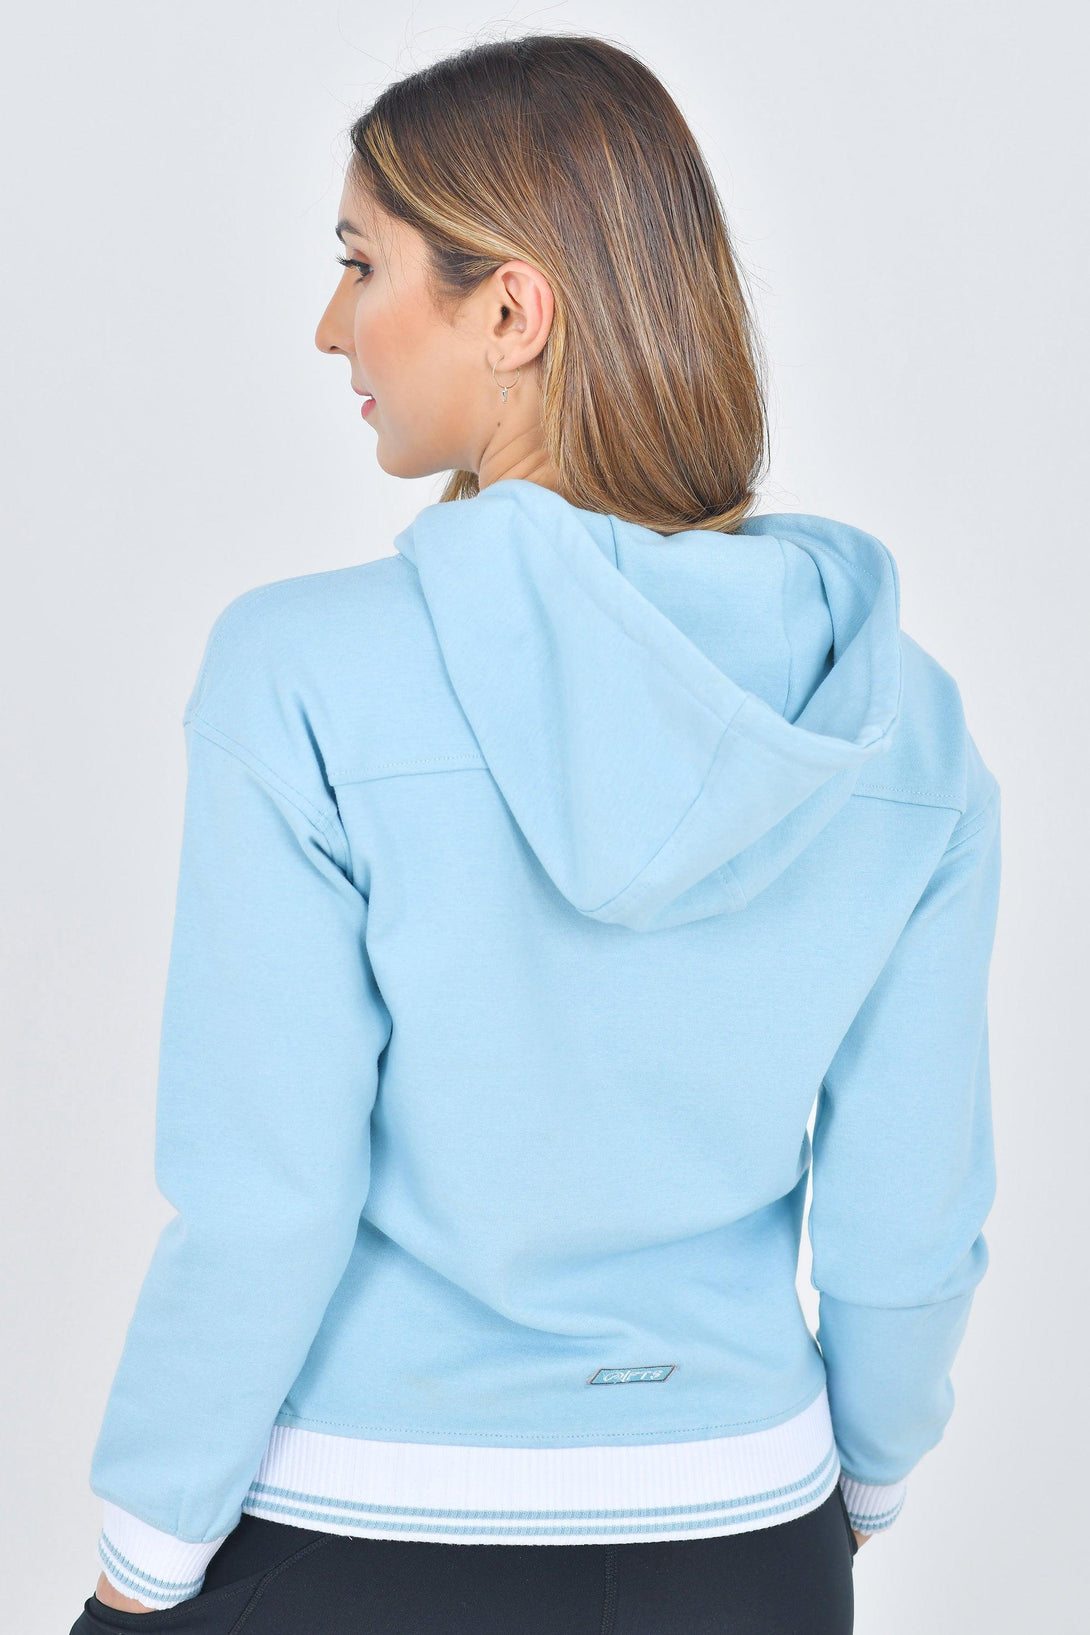 Damen-Hoodie mit 2 Reißverschlusstaschen | Blaue Farbe - Full Time Sports Germany 